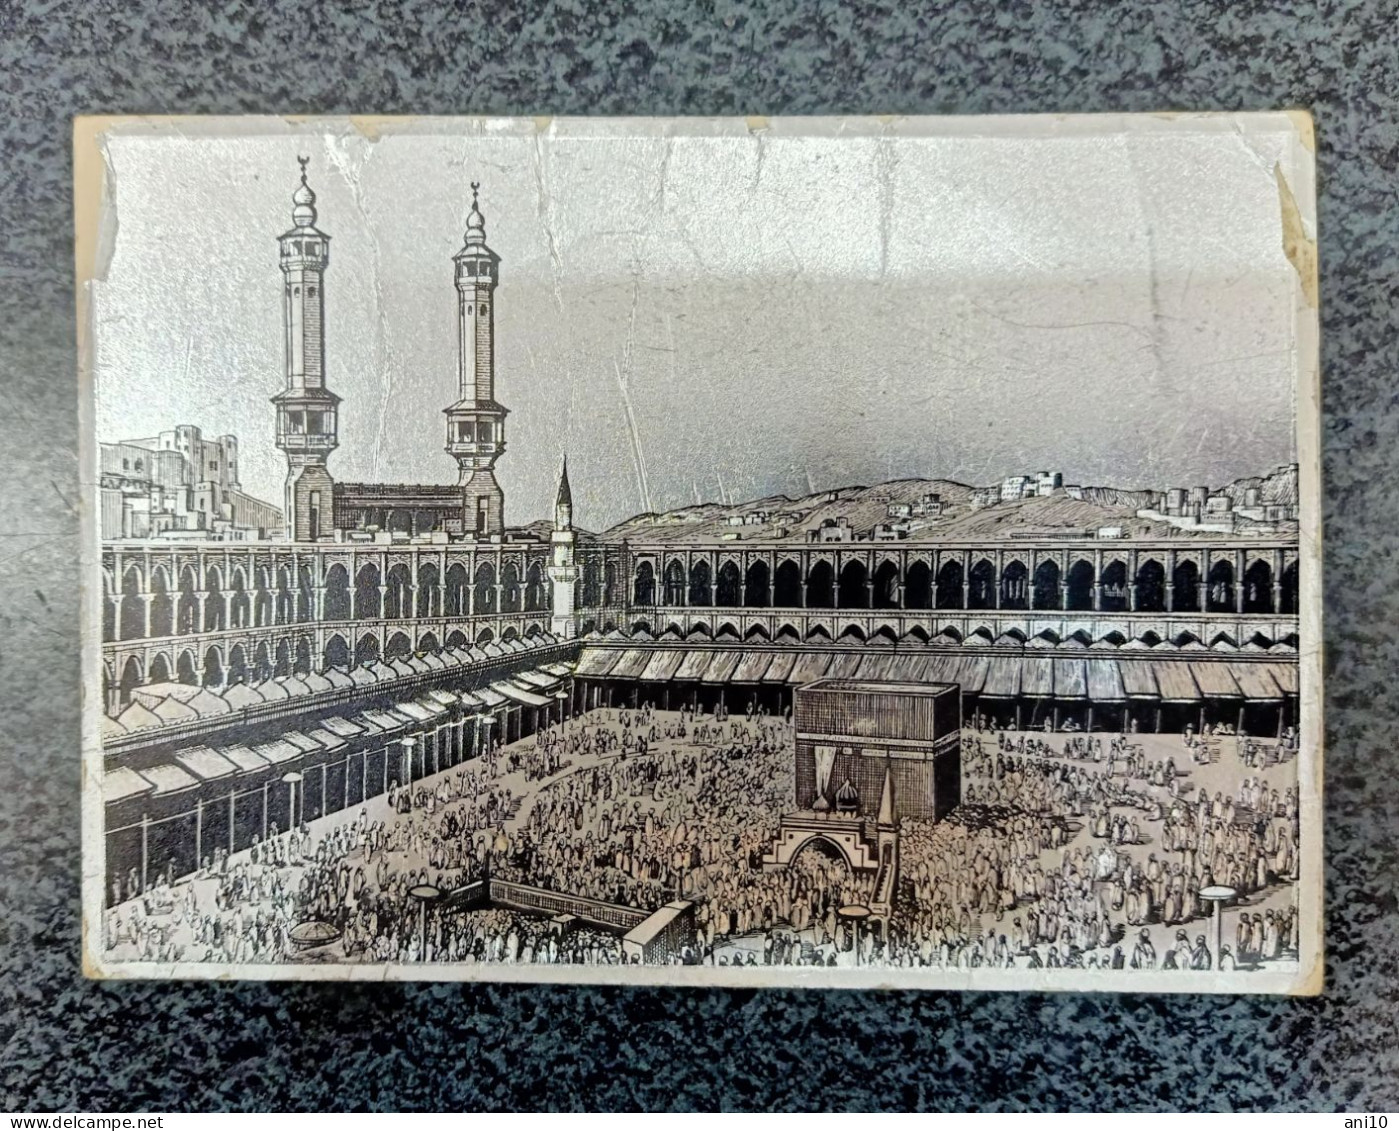 Mecca Saudi Arabia - Saudi Arabia